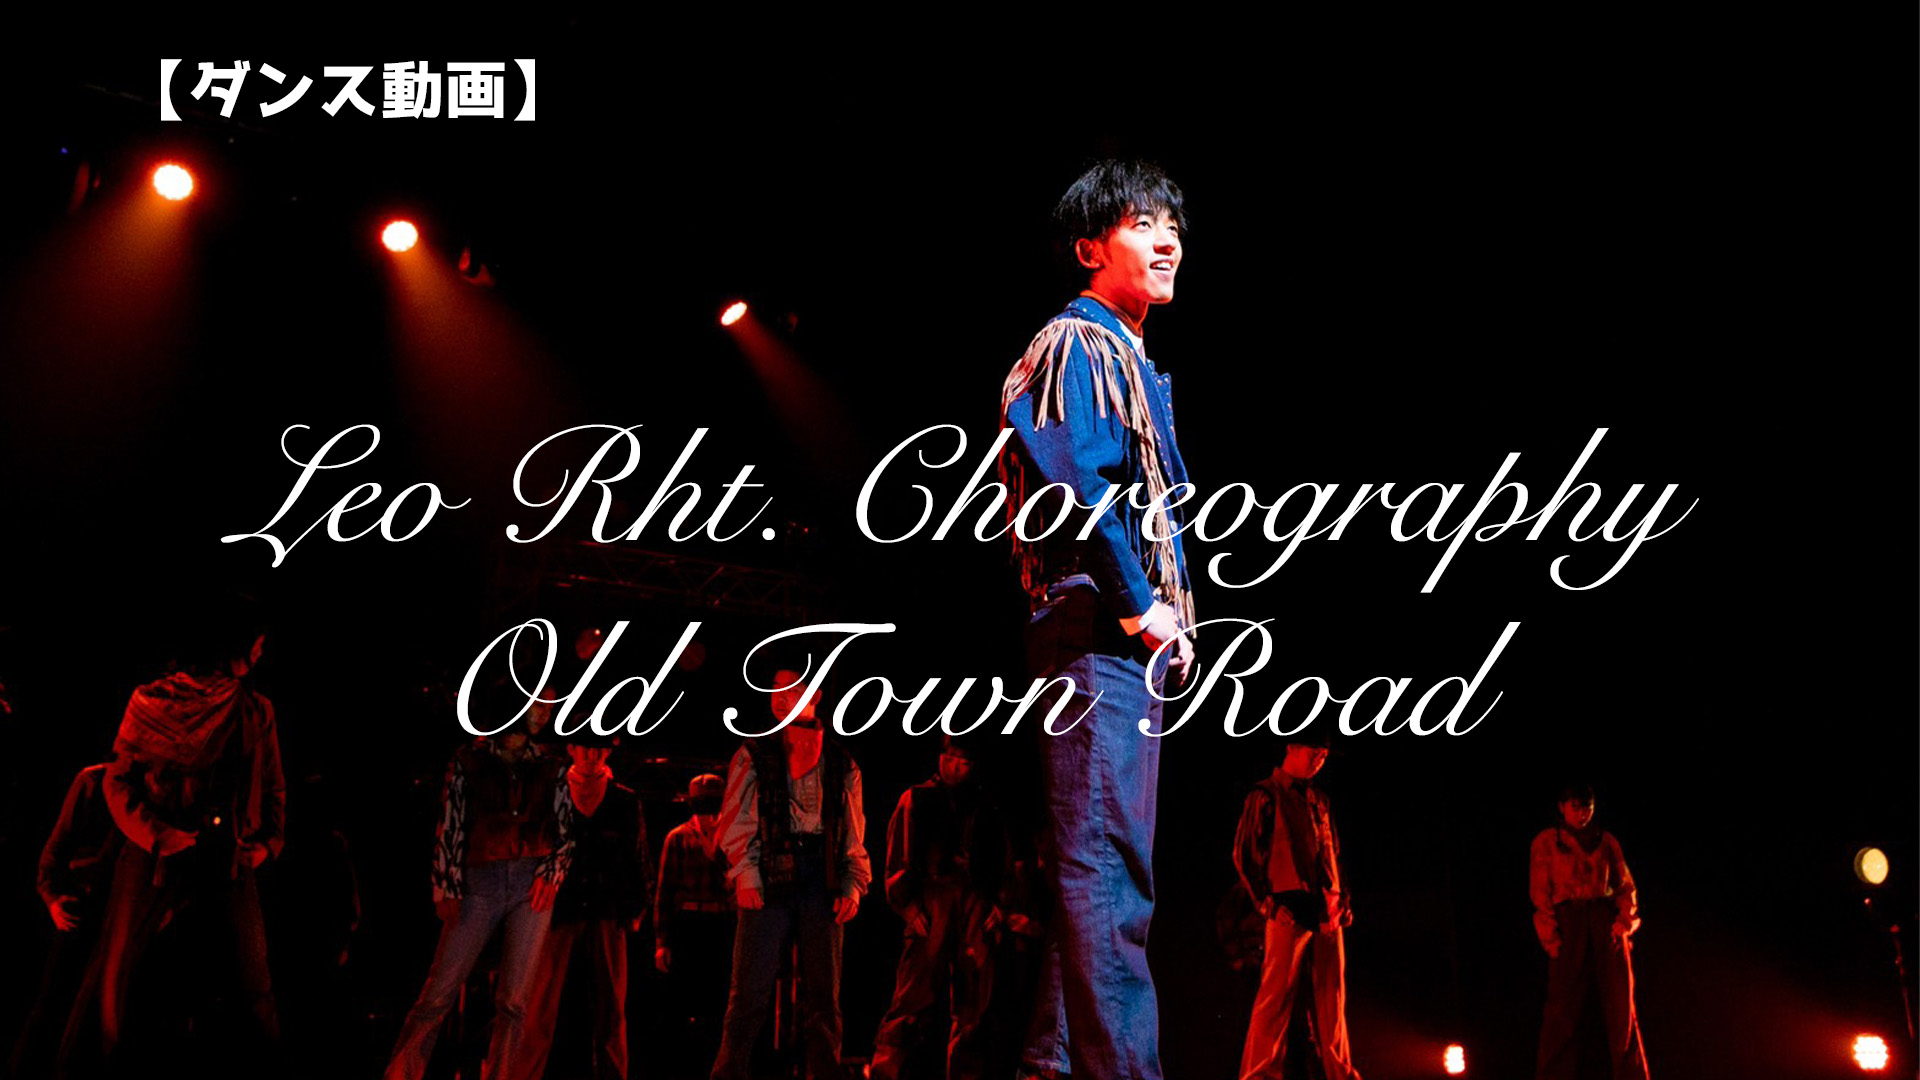 【ダンス動画】Leo Rht. Choreography - Old Town Road